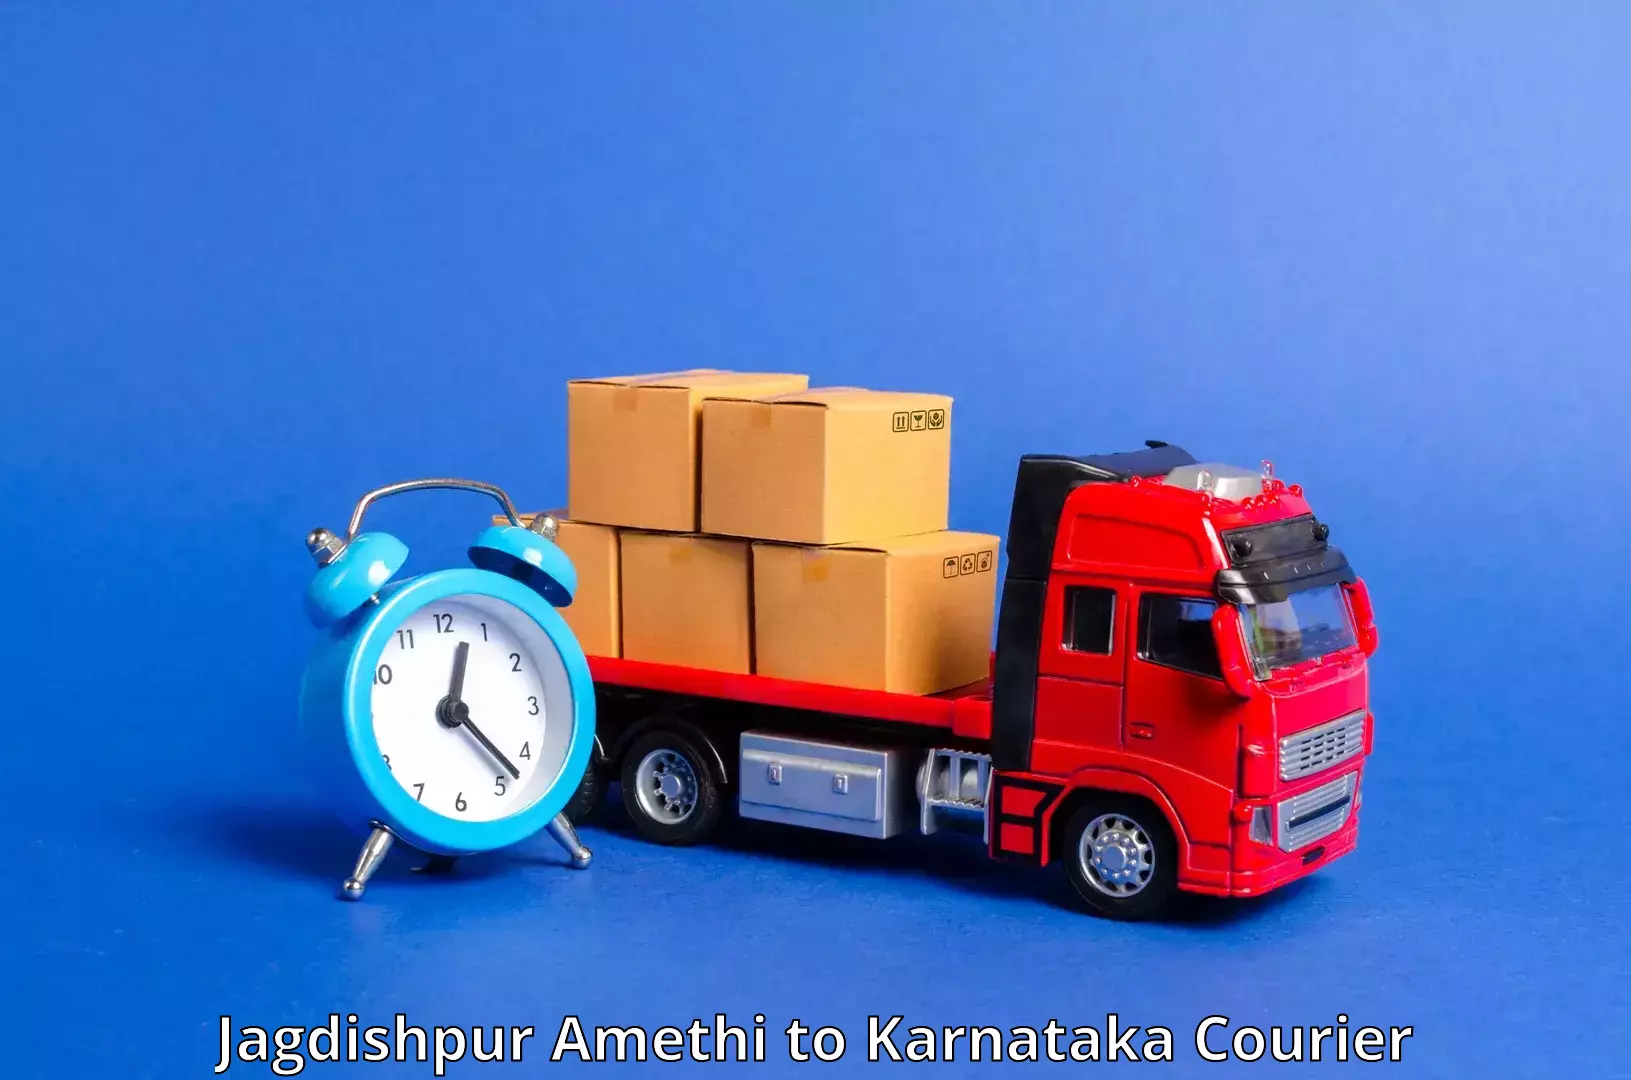 Door-to-door freight service Jagdishpur Amethi to Devanahalli